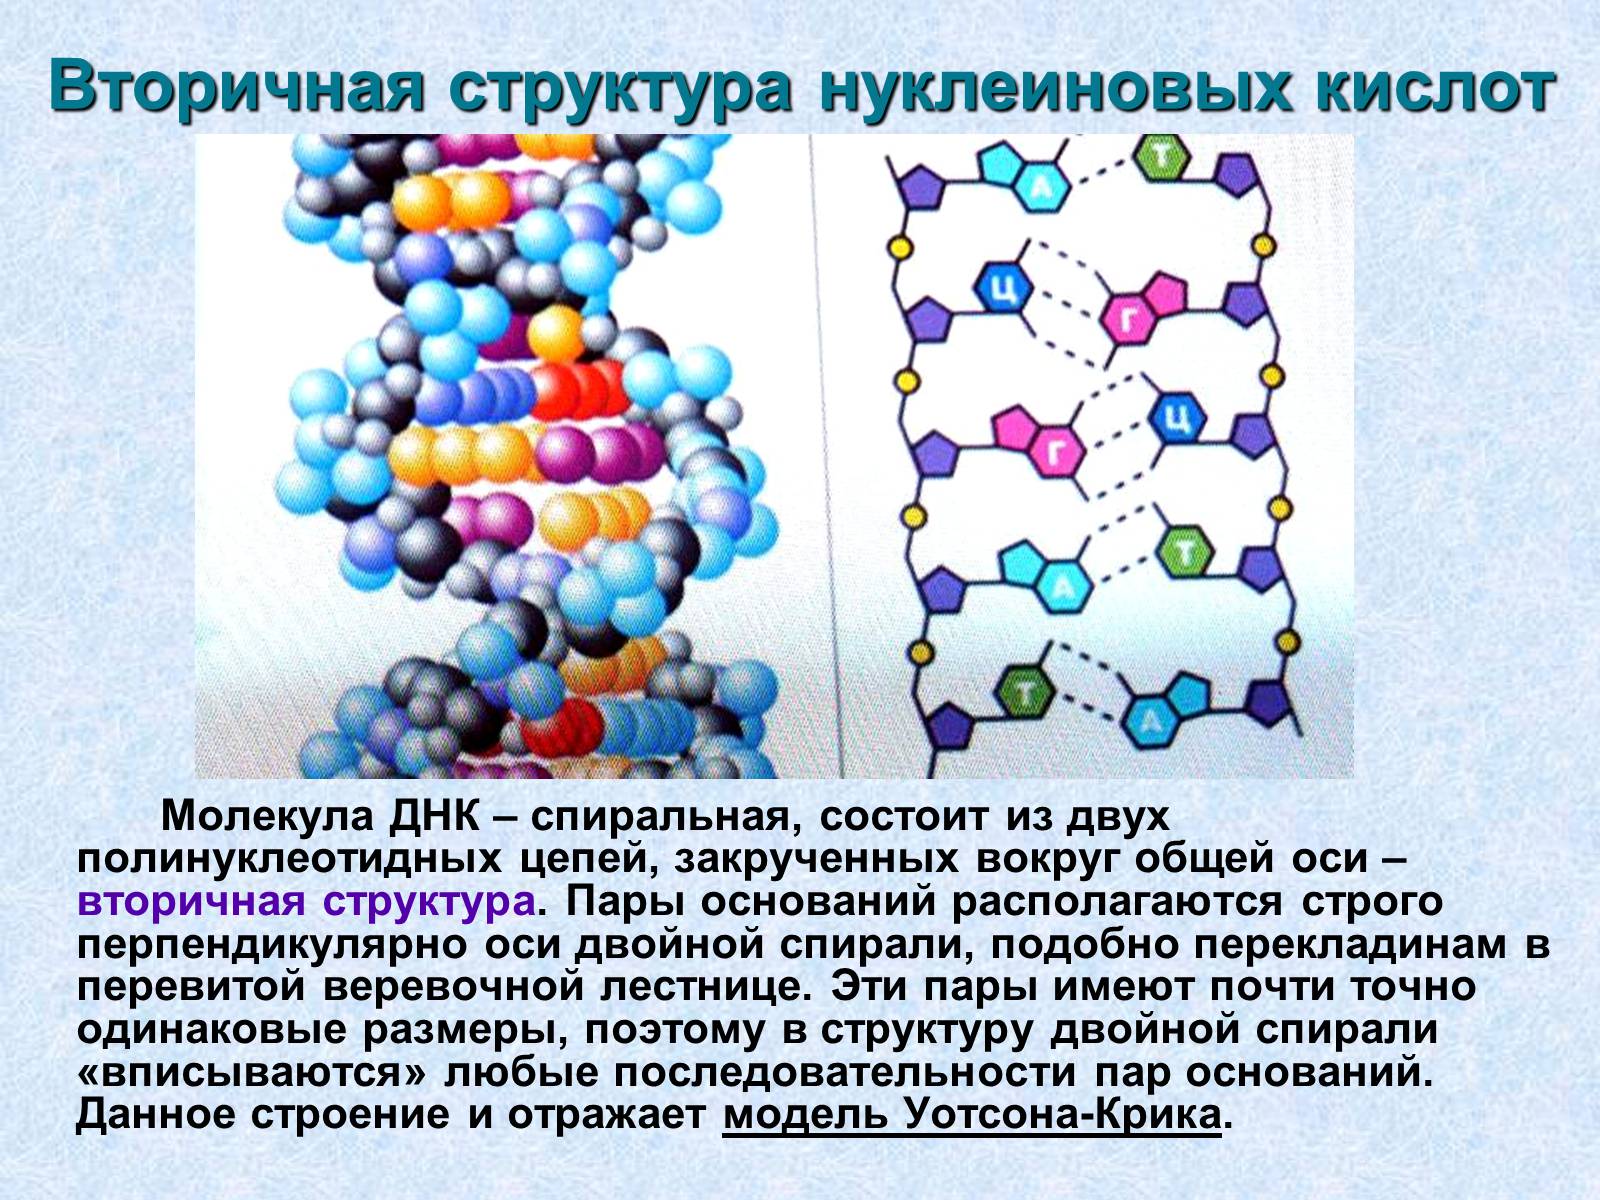 Мономерами молекул нуклеиновых кислот. Первичная и вторичная структура нуклеиновых кислот. Первичная вторичная и третичная структура нуклеиновых кислот. Первичная структура нуклеиновых кислот рисунок. Первичная и вторичная структура нуклеиновых кислот связи.